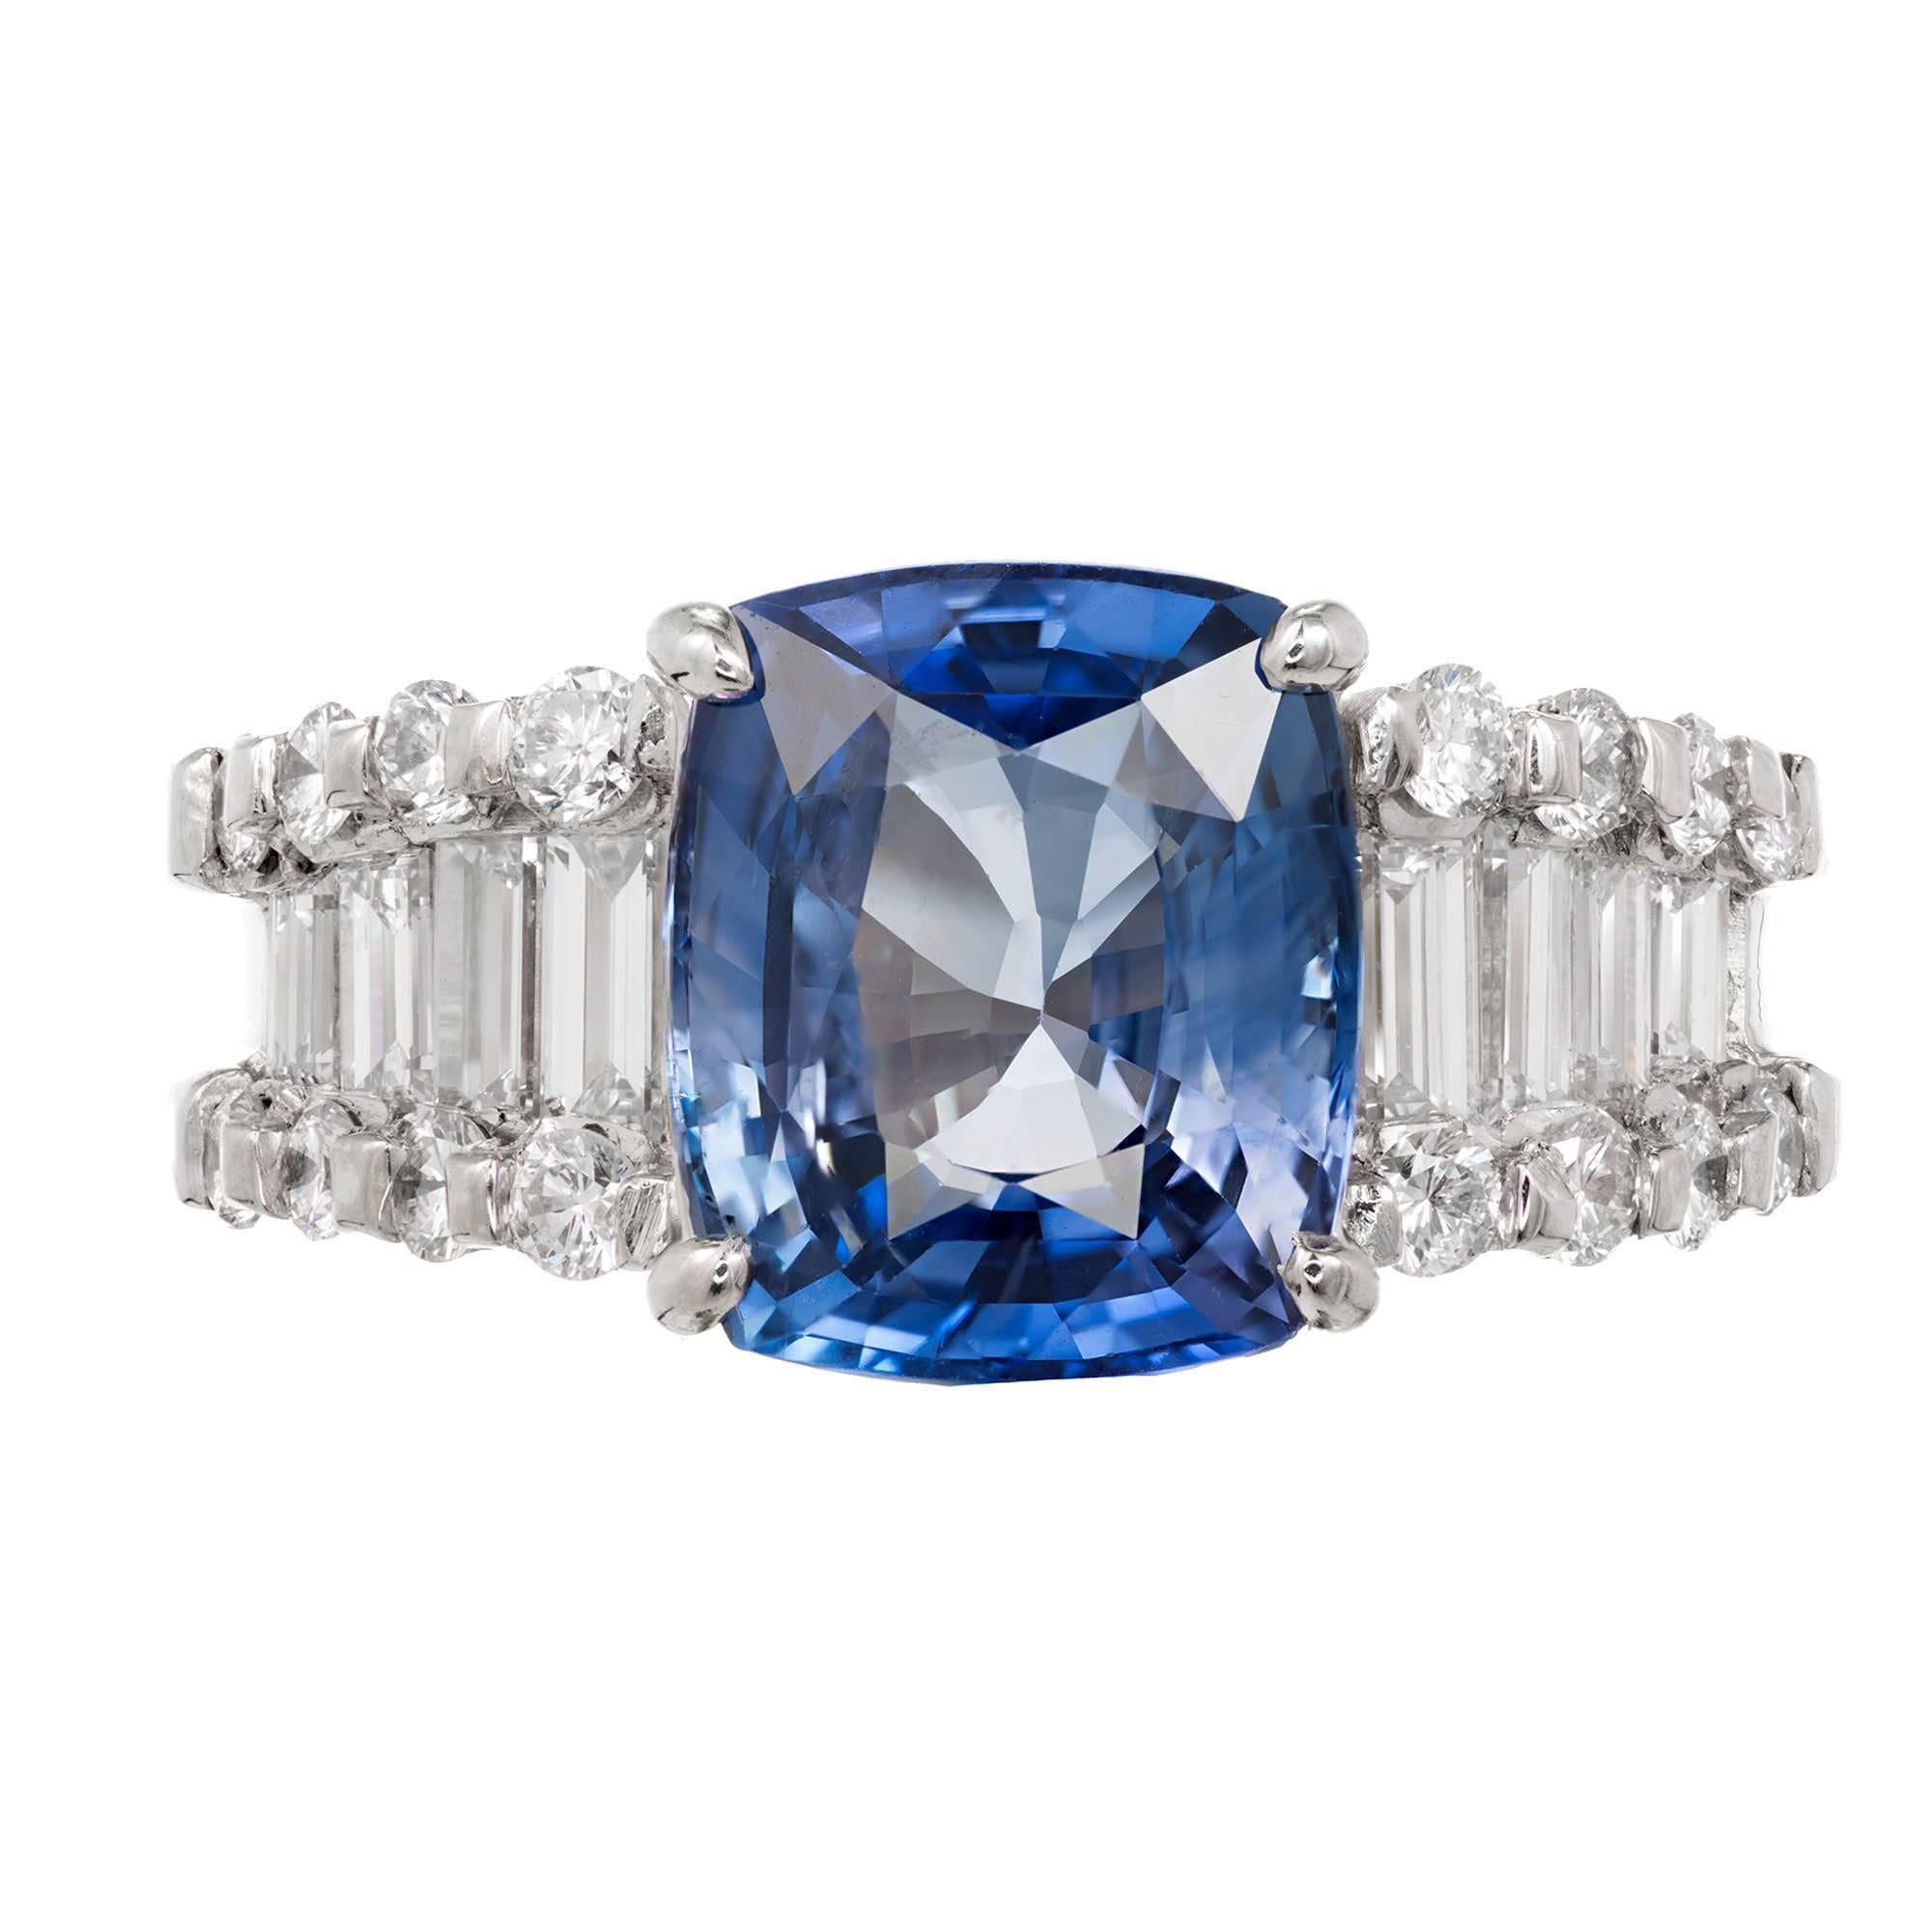 1950-1960 Estate hellblau 6,03 Karat Kissenschliff GIA zertifiziert Verlobungsring mit natürlichem Saphir und Diamant. Platin-Fassung mit einer einfachen Hitze, keine andere Verbesserung Saphir mit Smaragd und rund geschliffenen Diamanten Akzente.